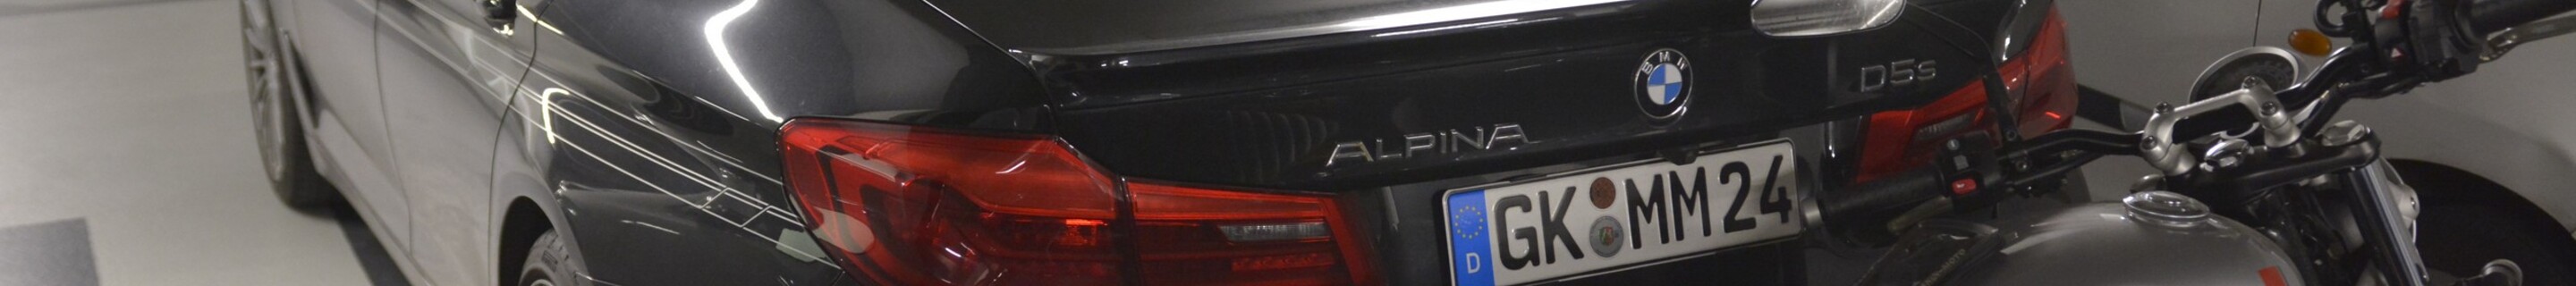 Alpina D5 S Allrad 2017